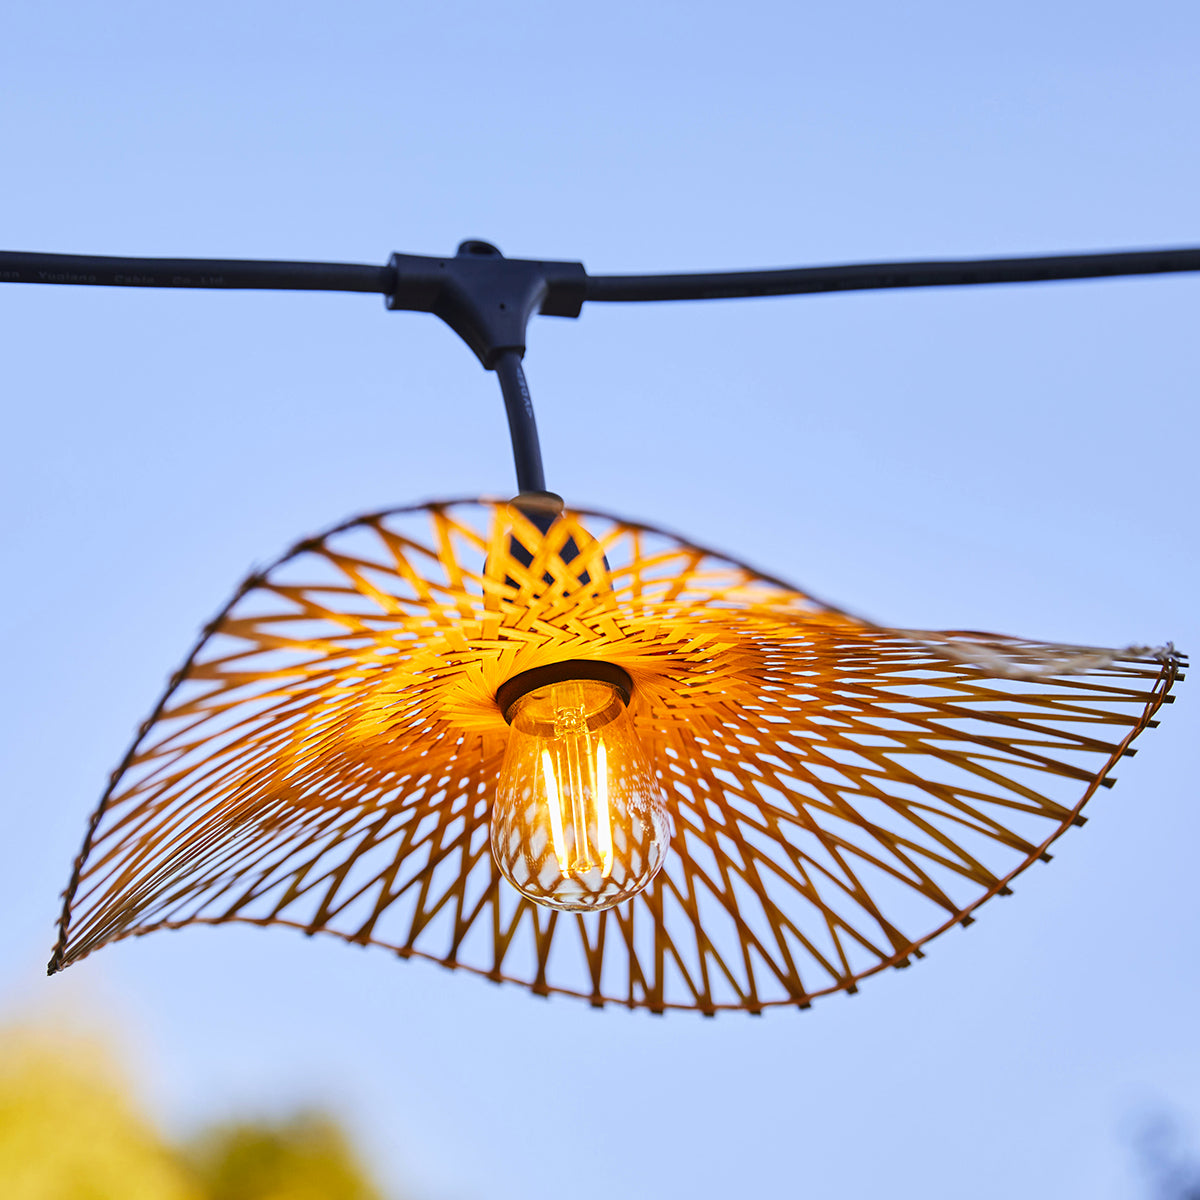 Guirlande lumineuse raccordable d'extérieur avec abat-jour en bambou naturel style bohème 7 ampoules à filament douille E27 LED blanc chaud SERENITY LIGHT 6m